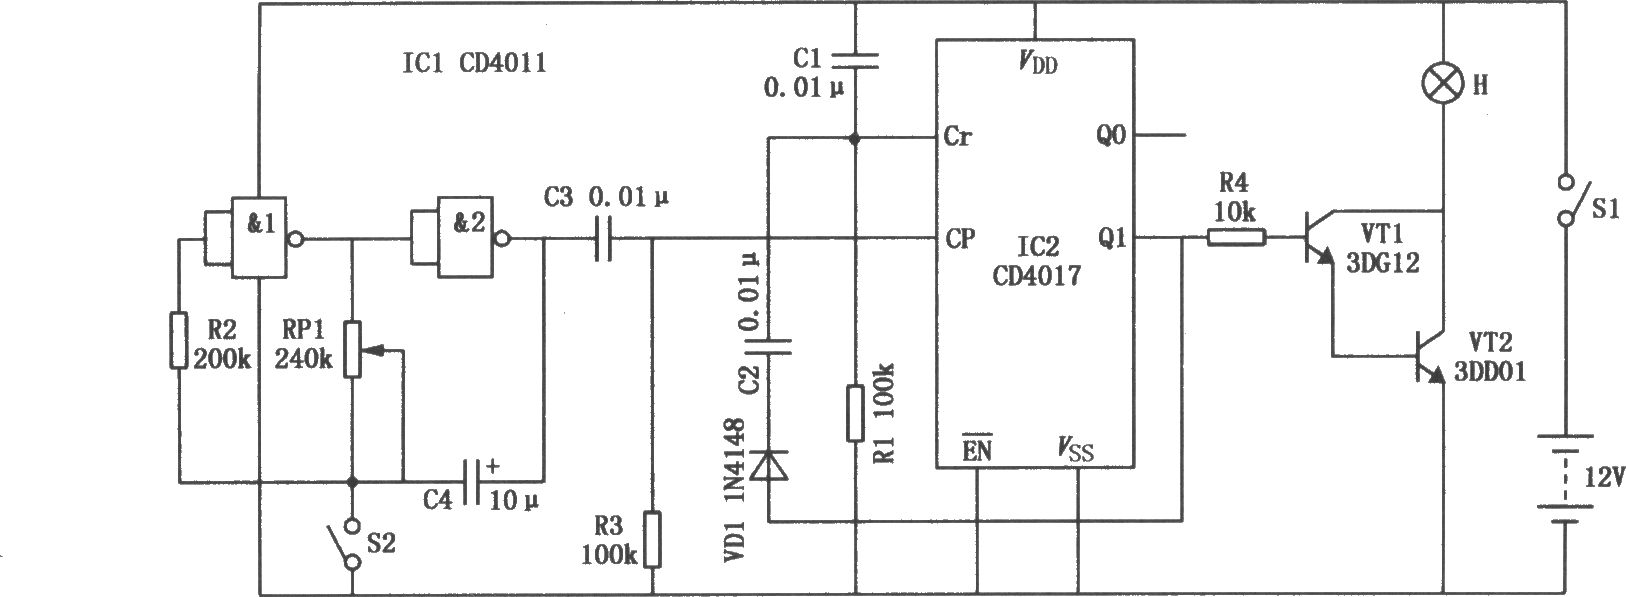 施工指示燈電路圖(CD4017、CD4011)